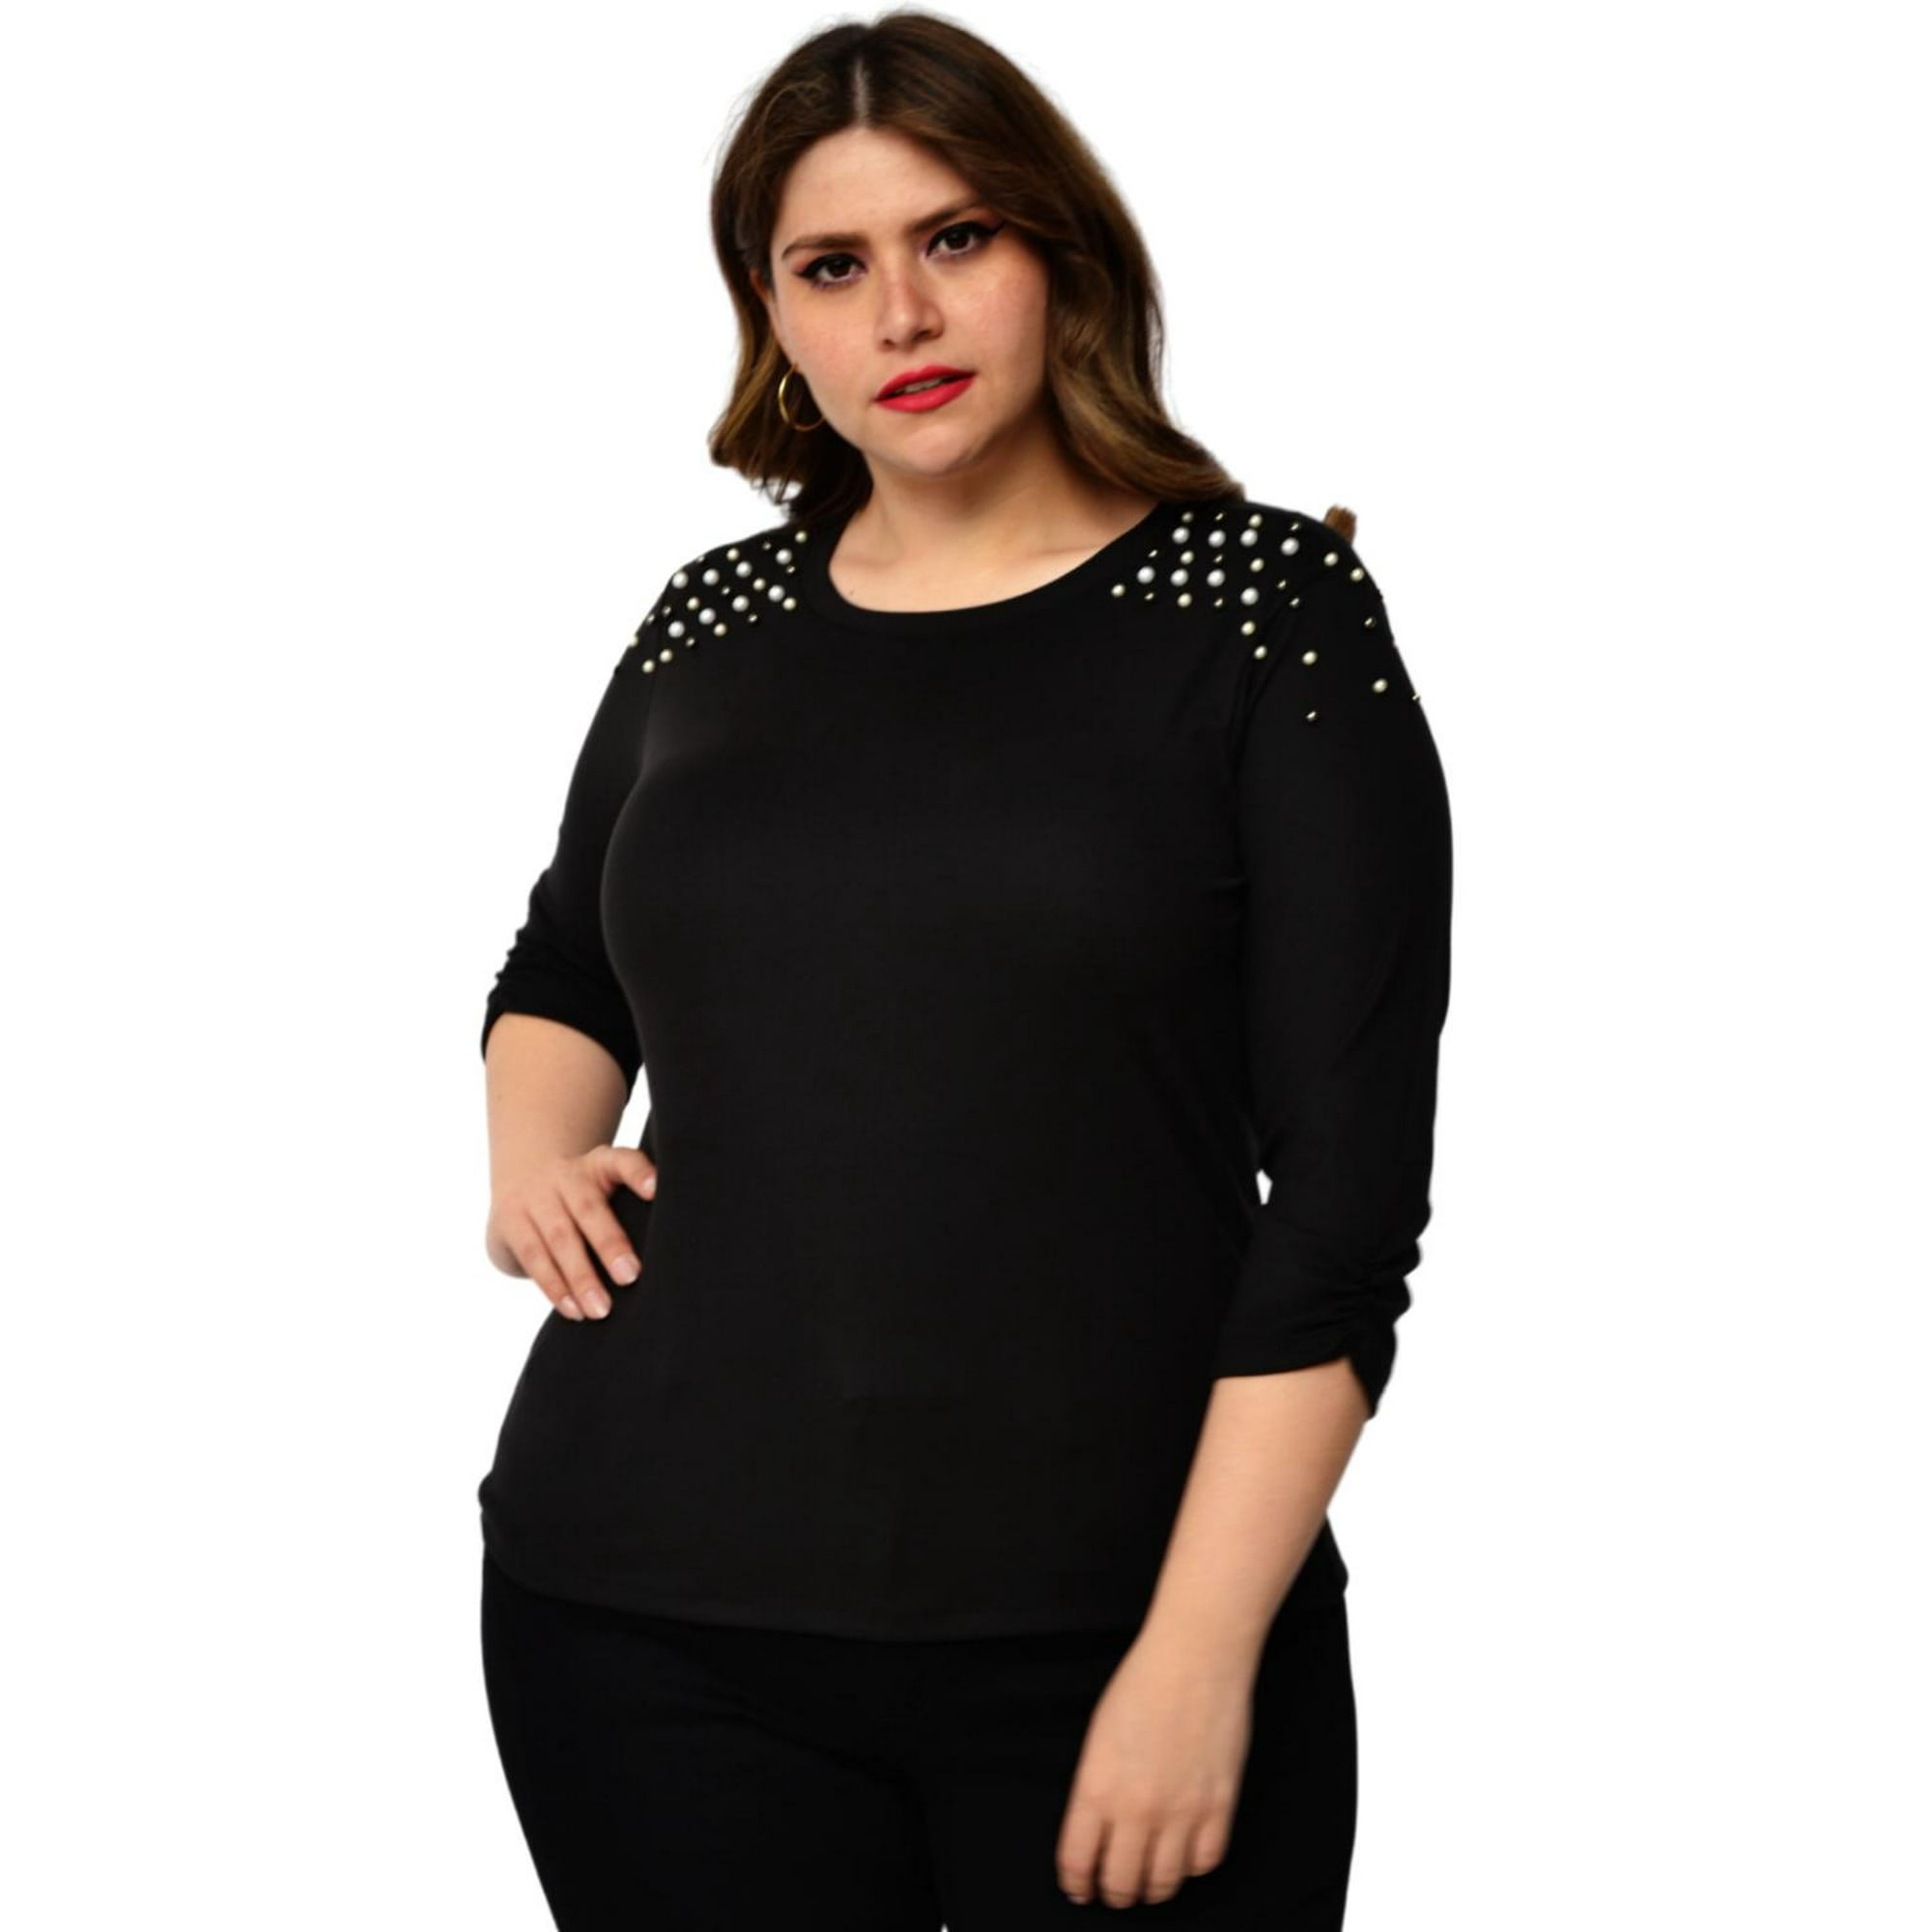 Blusa con perlas en hombros, talla extra modelo 3743-C (Negro) negro 36 roman fashion blusa extra 3743-C